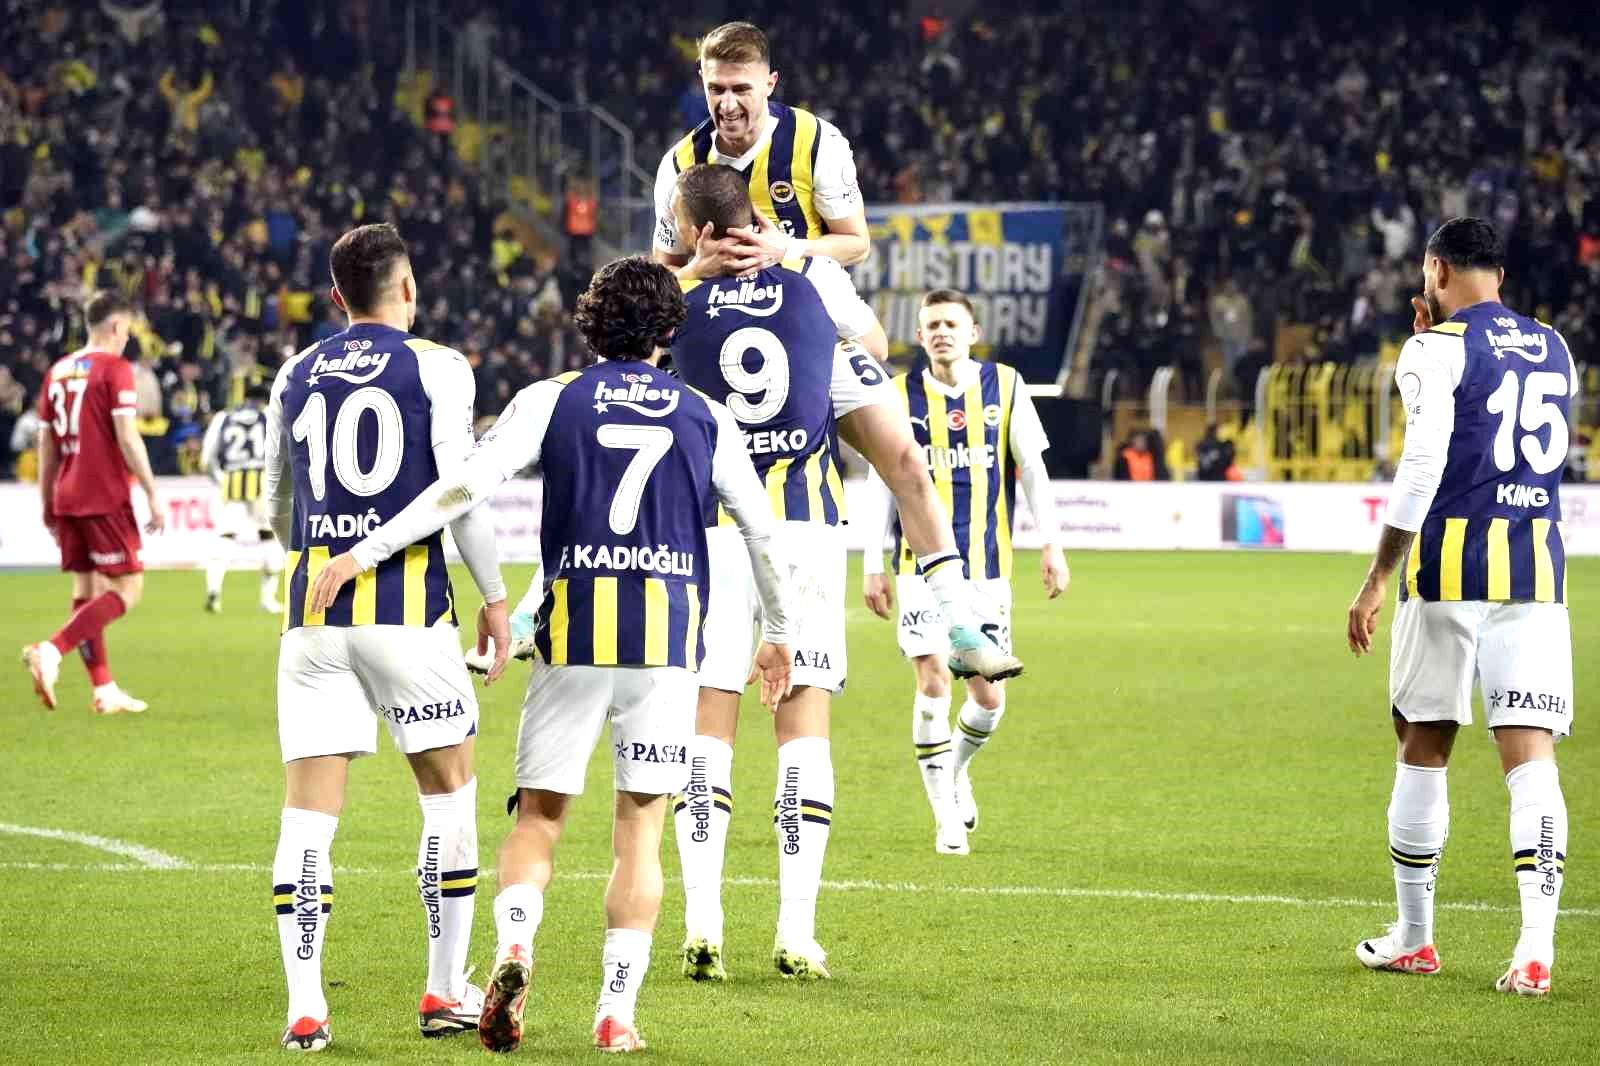 Fenerbahçe, Galatasaray’a karşı seriyi bitirmek istiyor